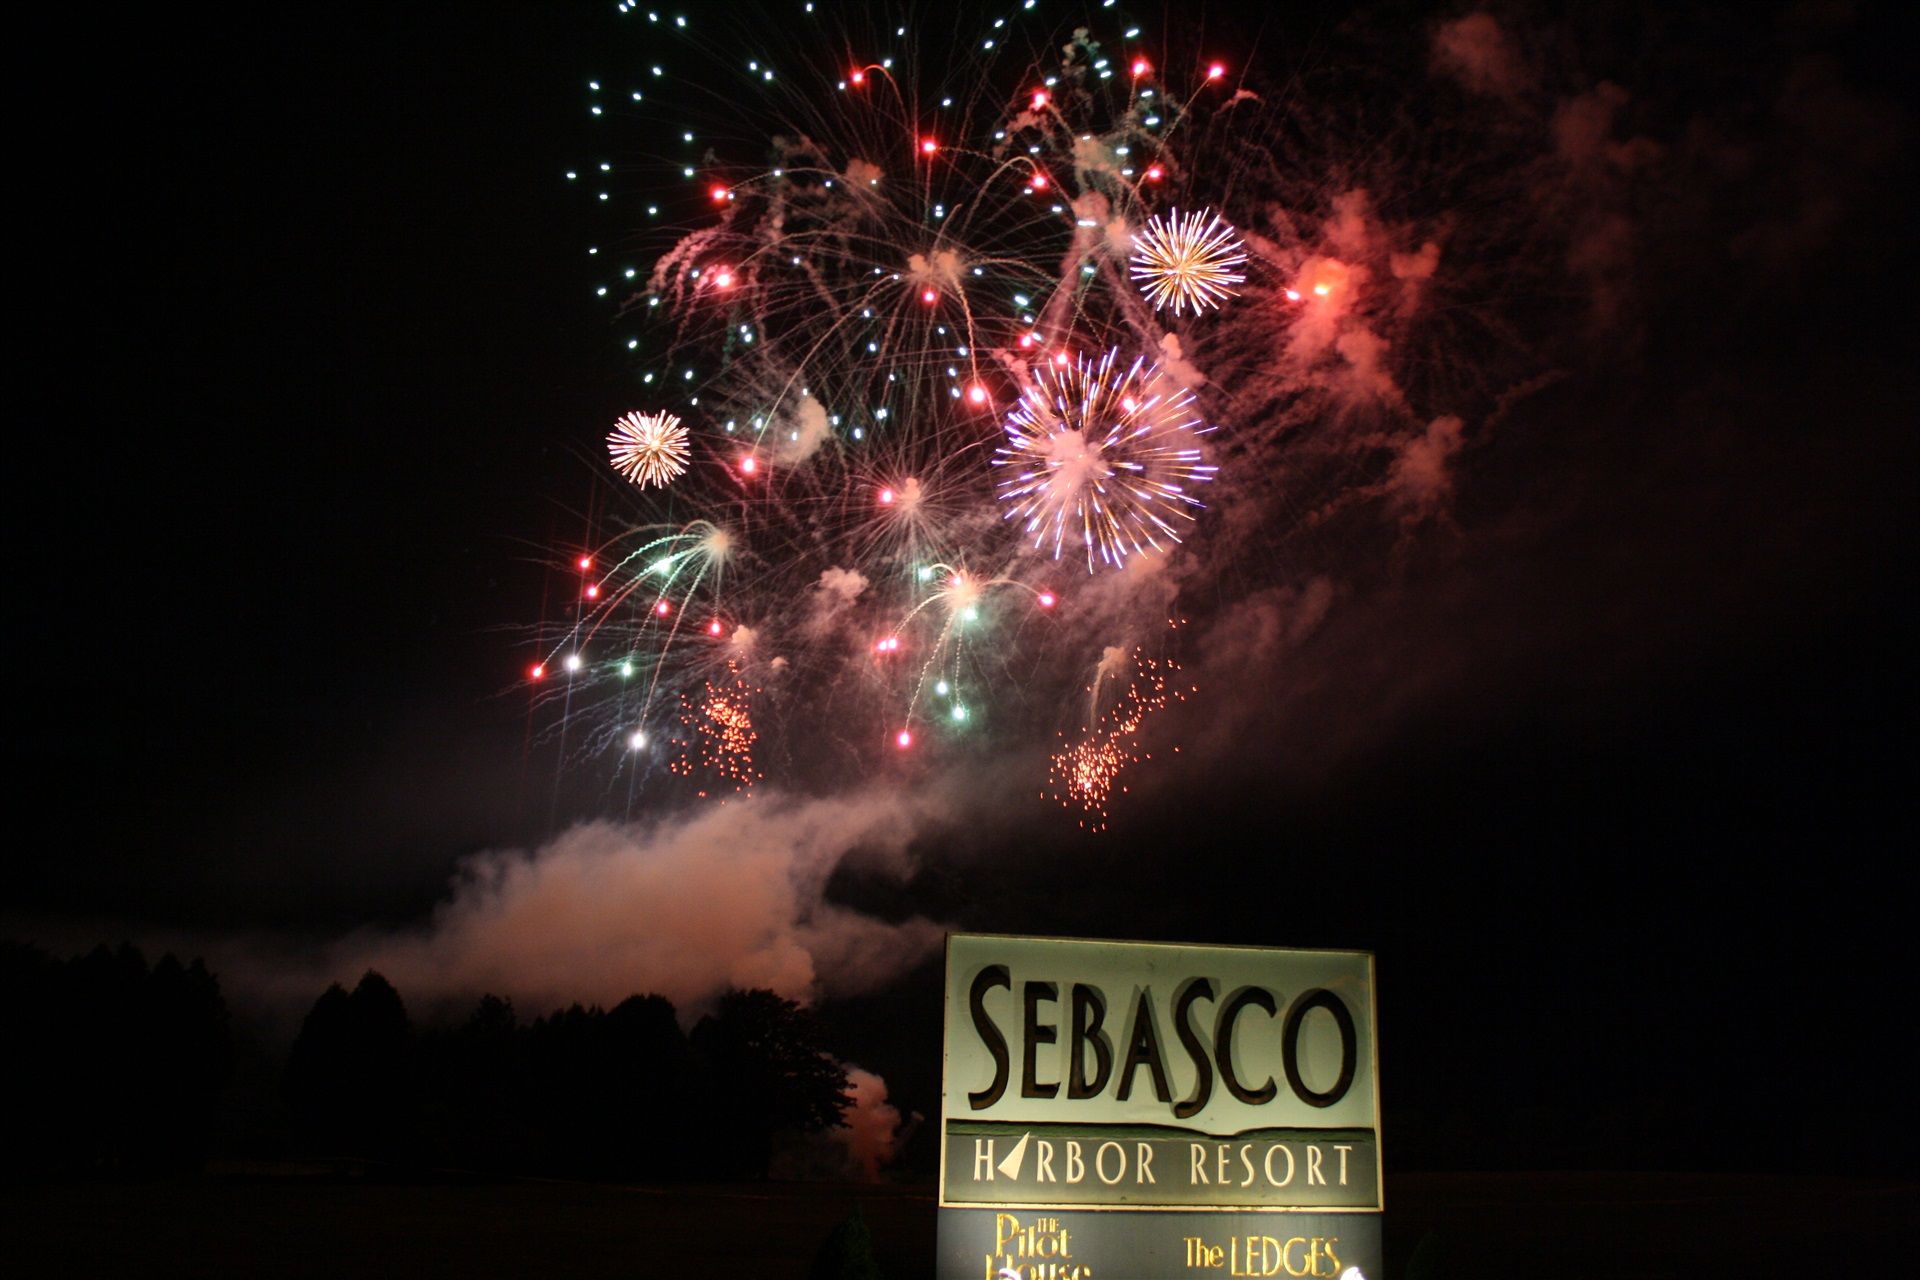 Annual Fireworks Show - Sebasco Harbor Resort